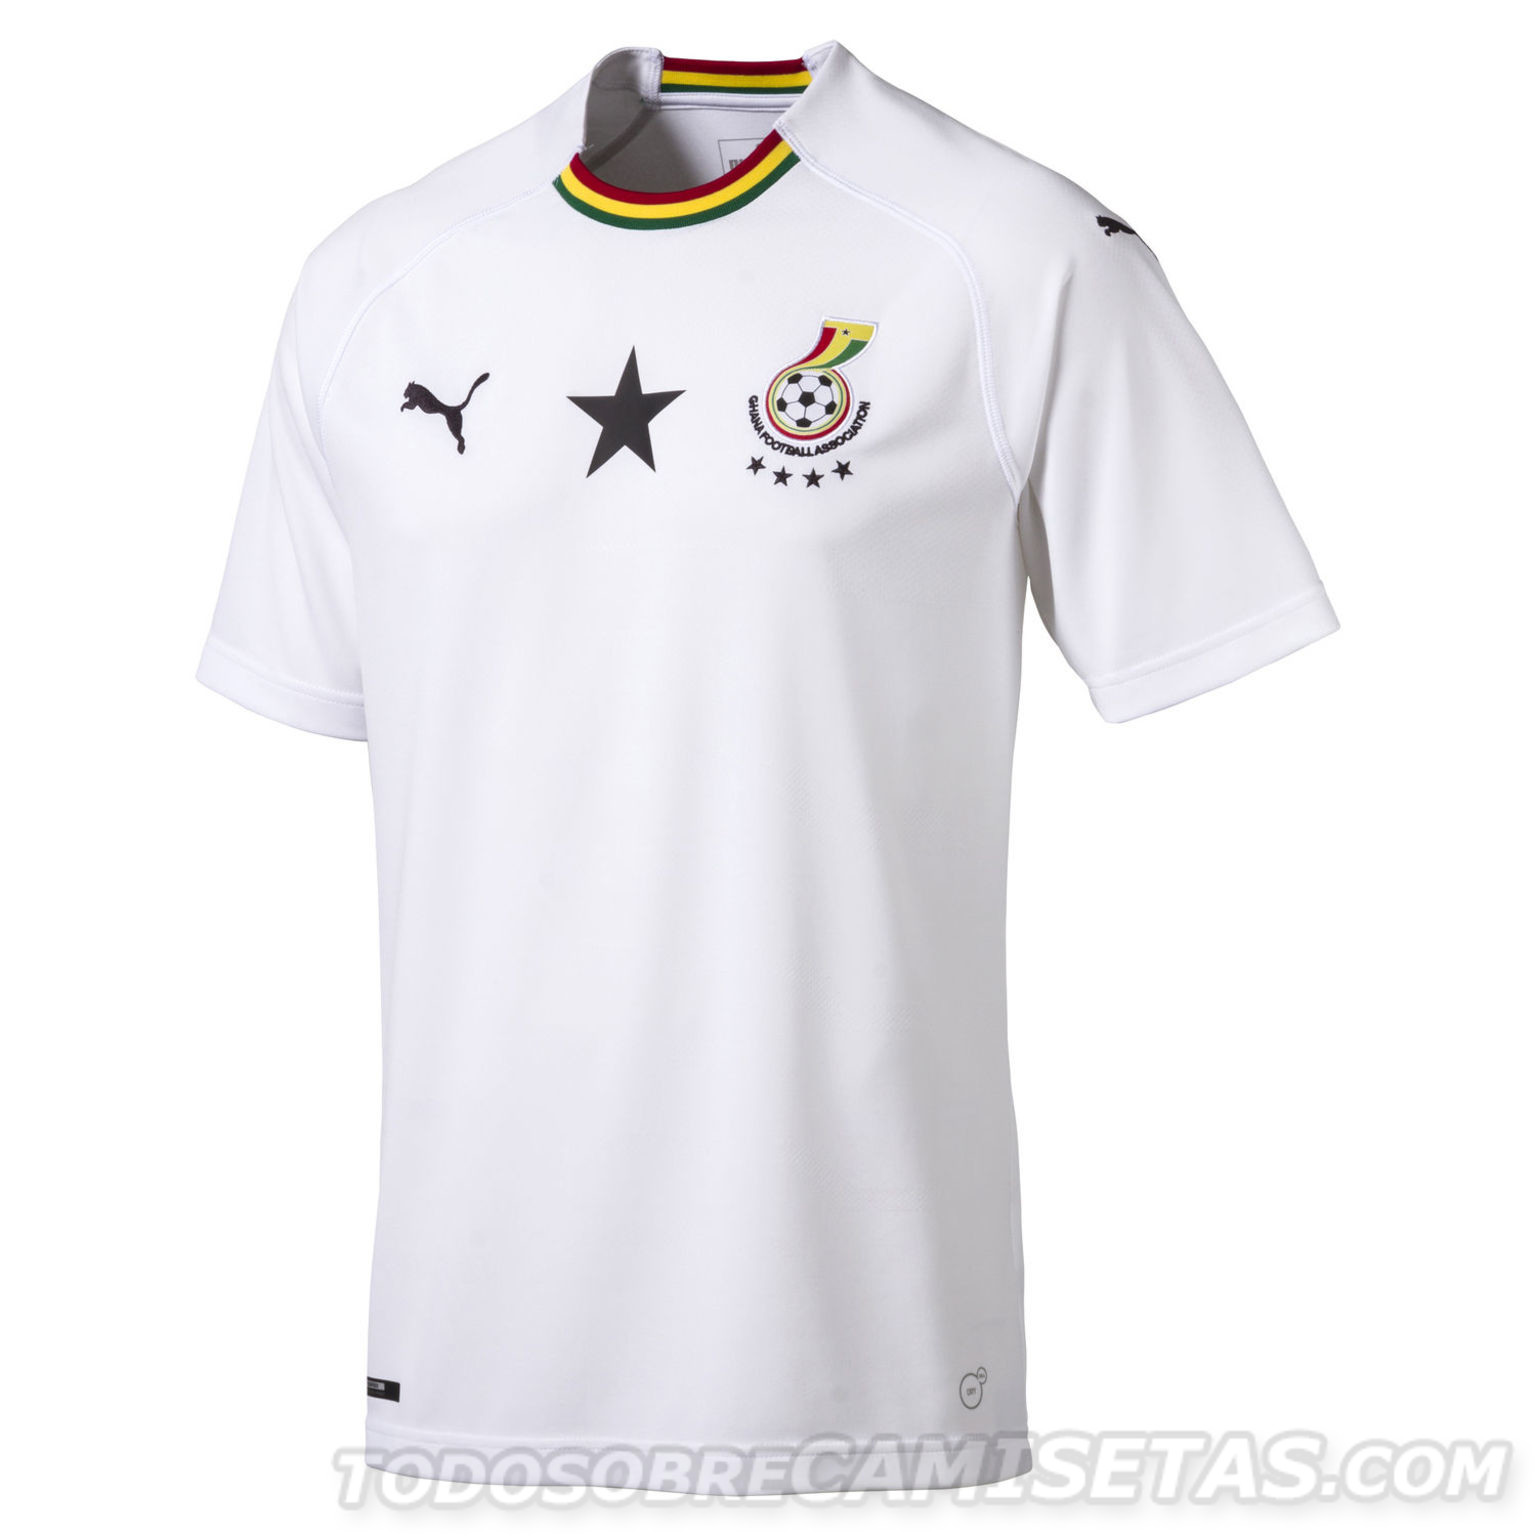 Ghana 2018 away kit